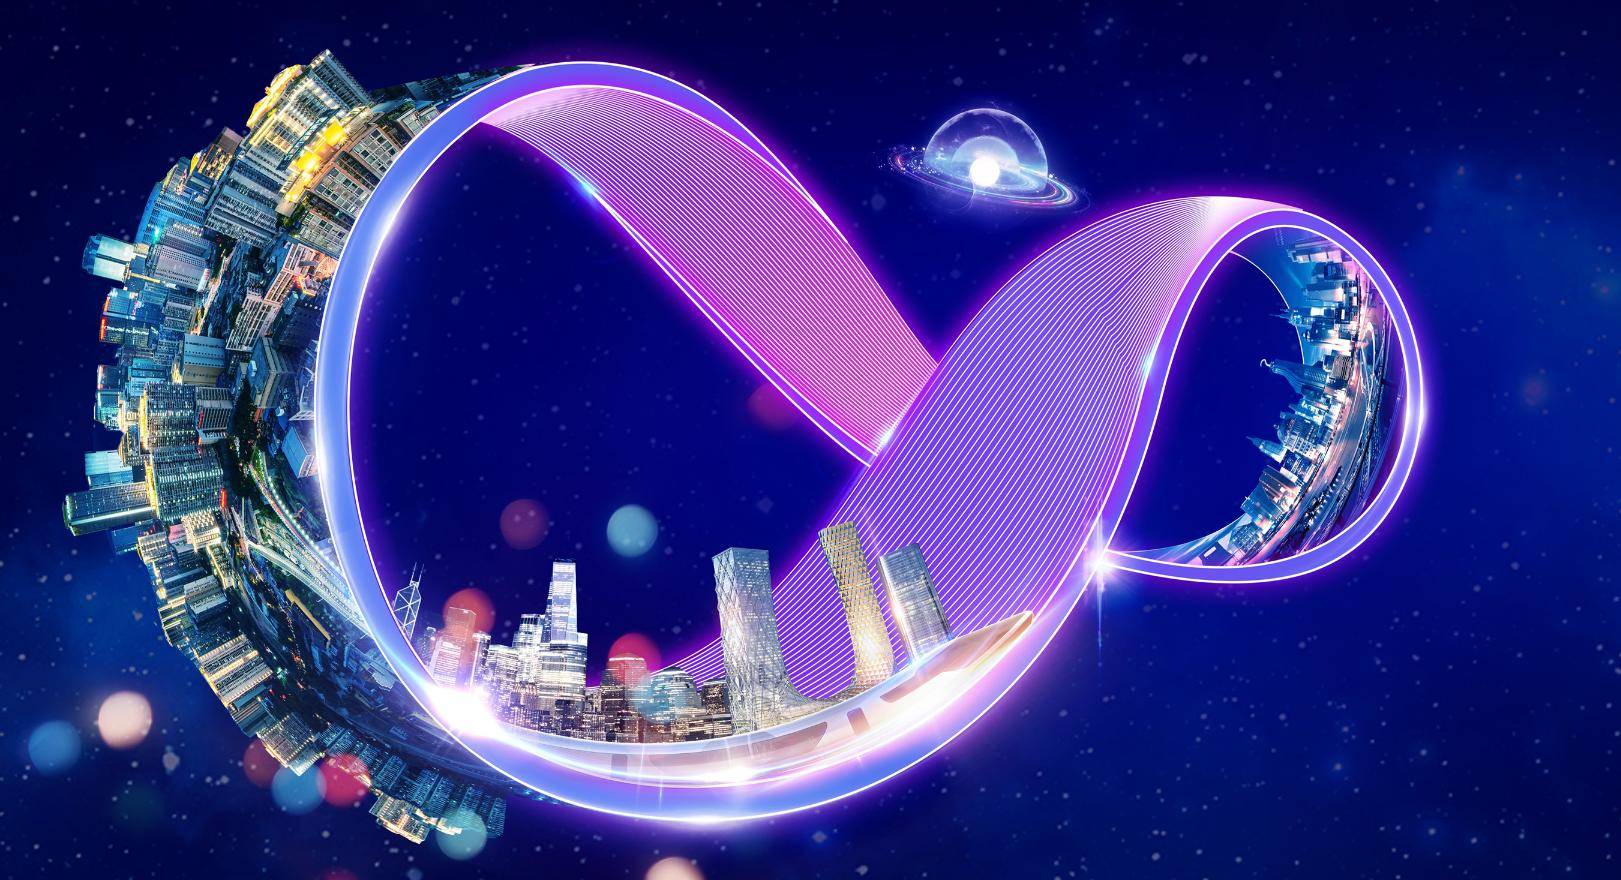 这张图片展示了一个无限循环符号形状的城市，环绕在太空中，充满了未来感和科幻色彩。